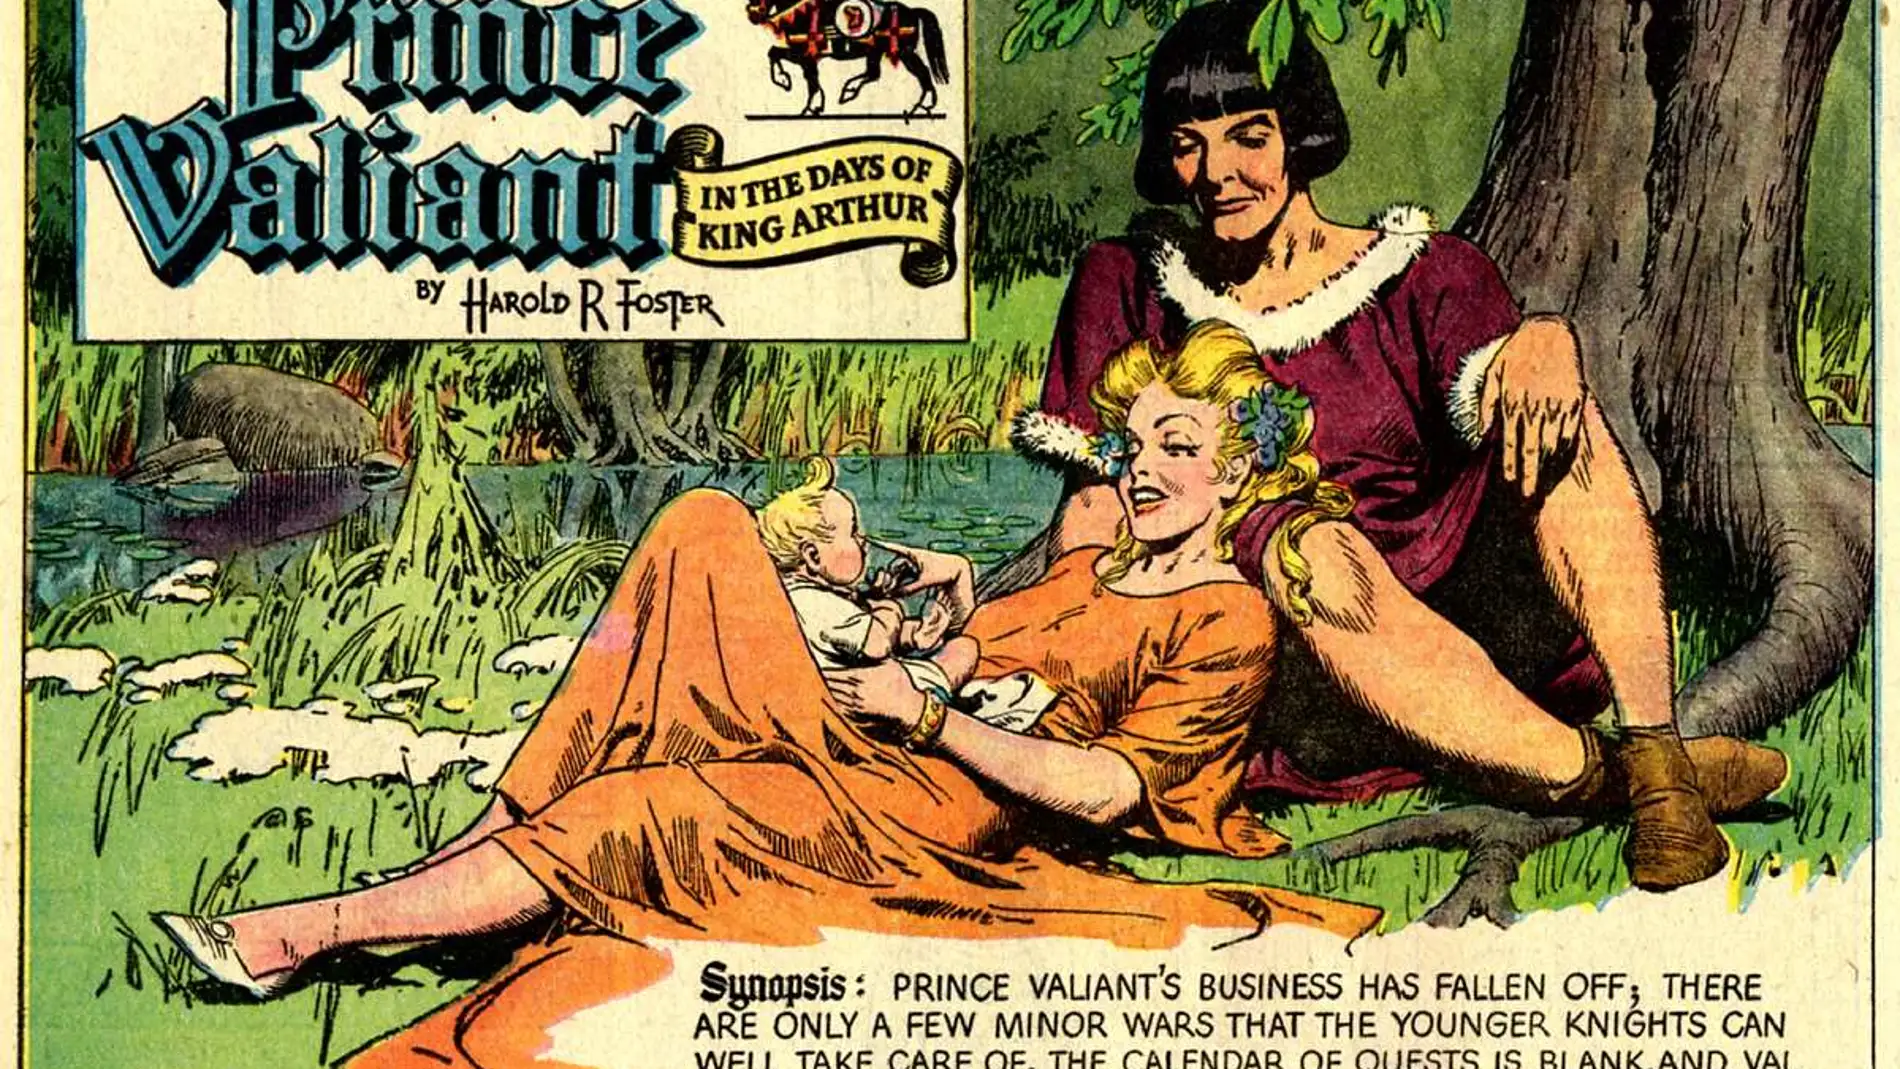 El príncipe valiente es un personaje creado por Harold Foster en 1937